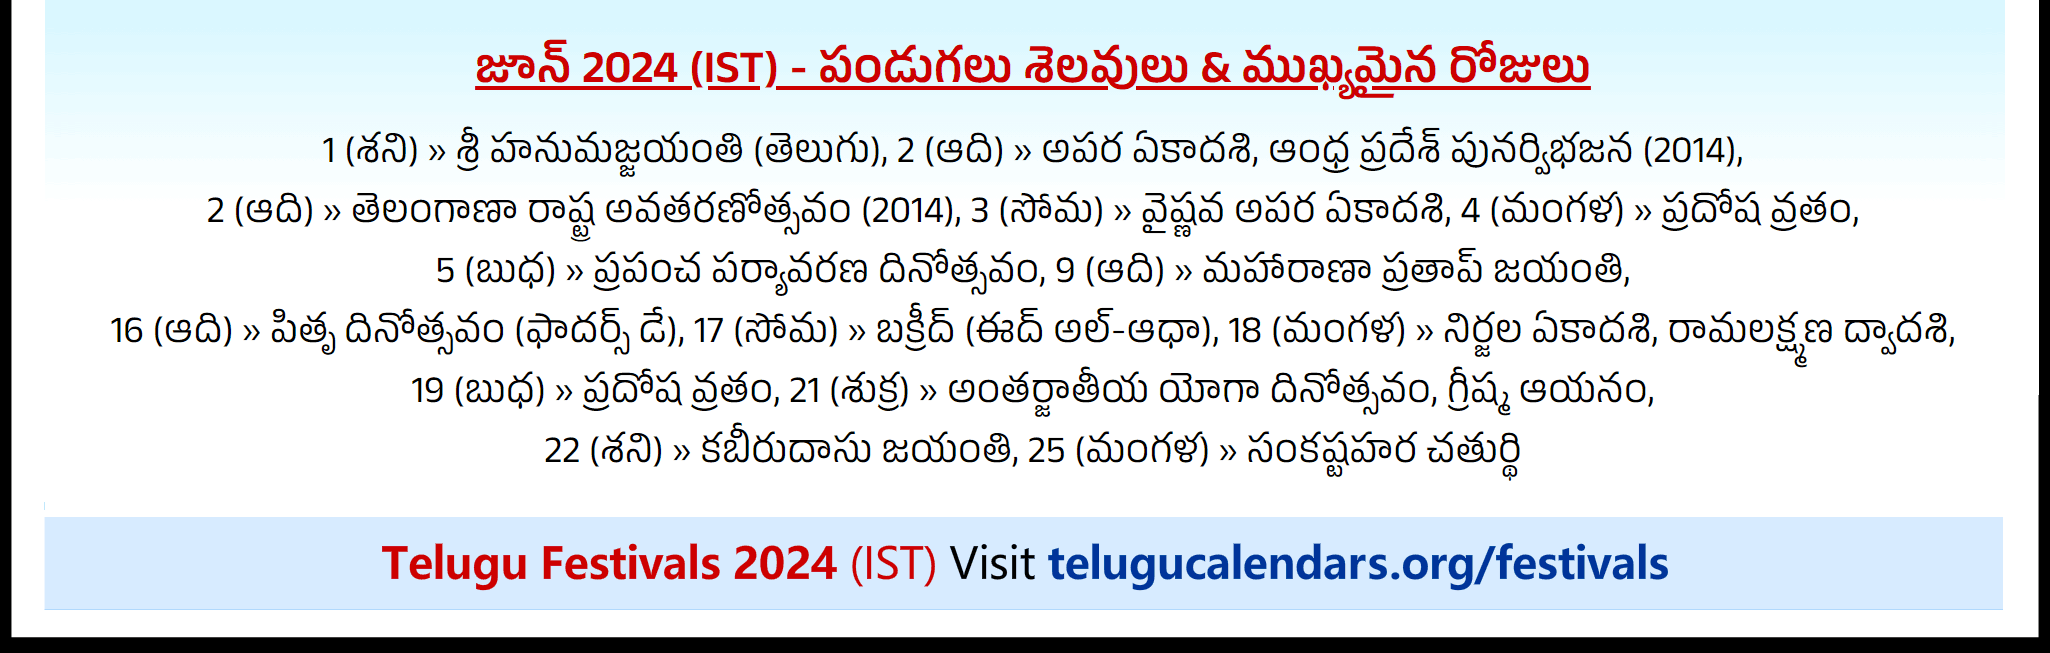 Telugu Festivals 2024 June Chicago